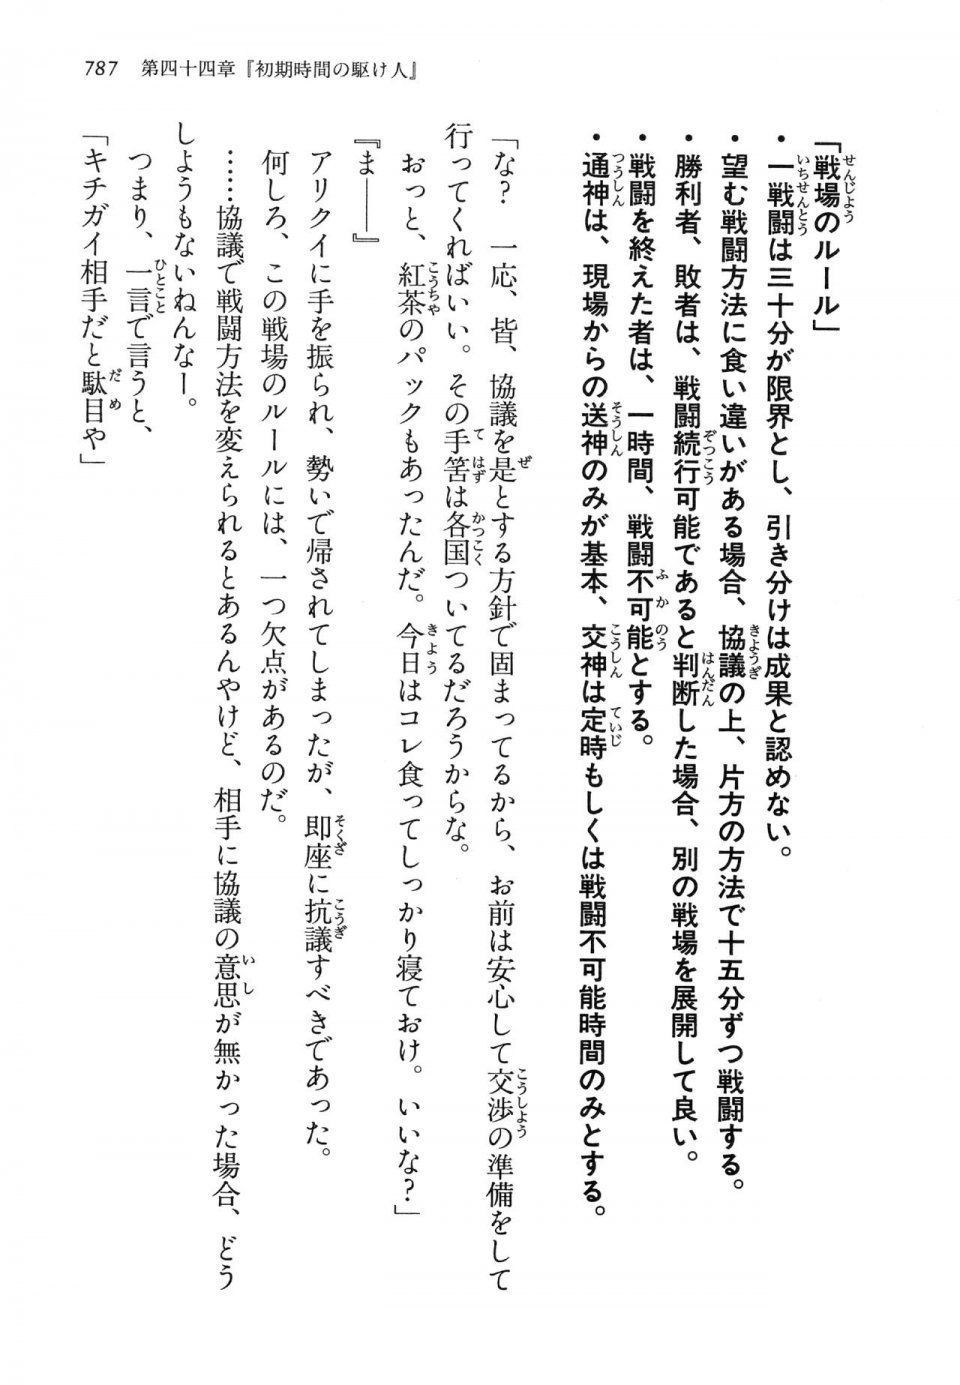 Kyoukai Senjou no Horizon LN Vol 14(6B) - Photo #787